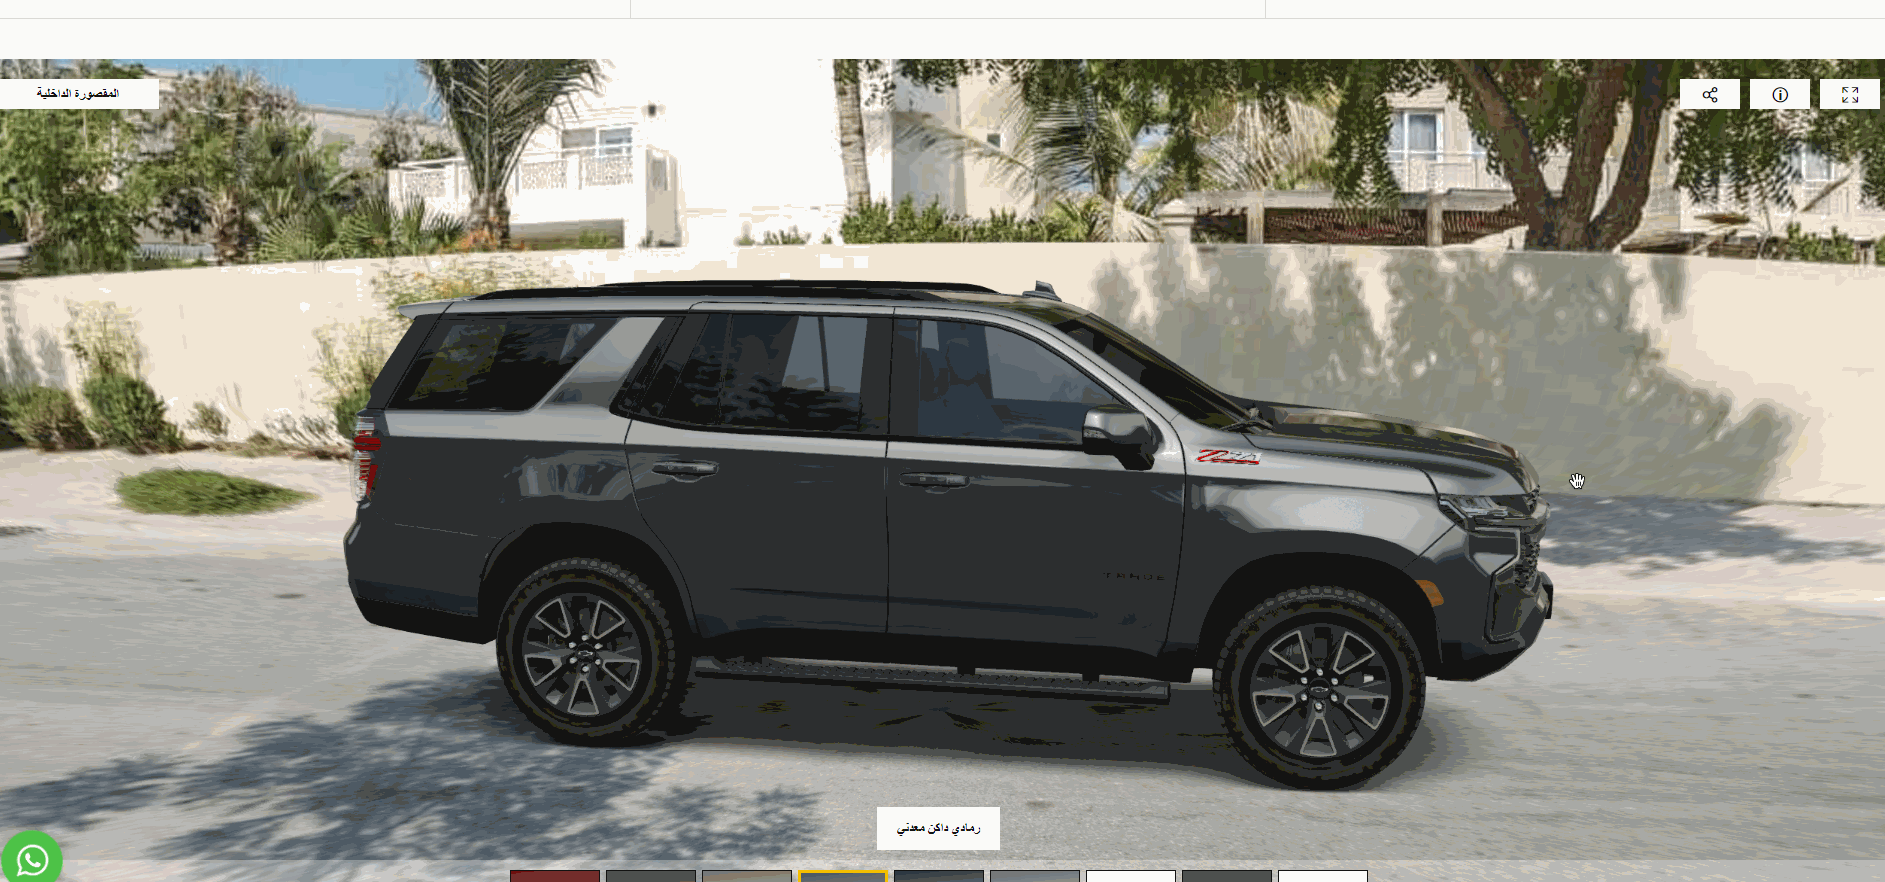 شاهد سيارات شيفروليه وفئاتها في السعودية بطريقة عرض 360 درجة على موقع الوكيل "الجميح للسيارات" 4